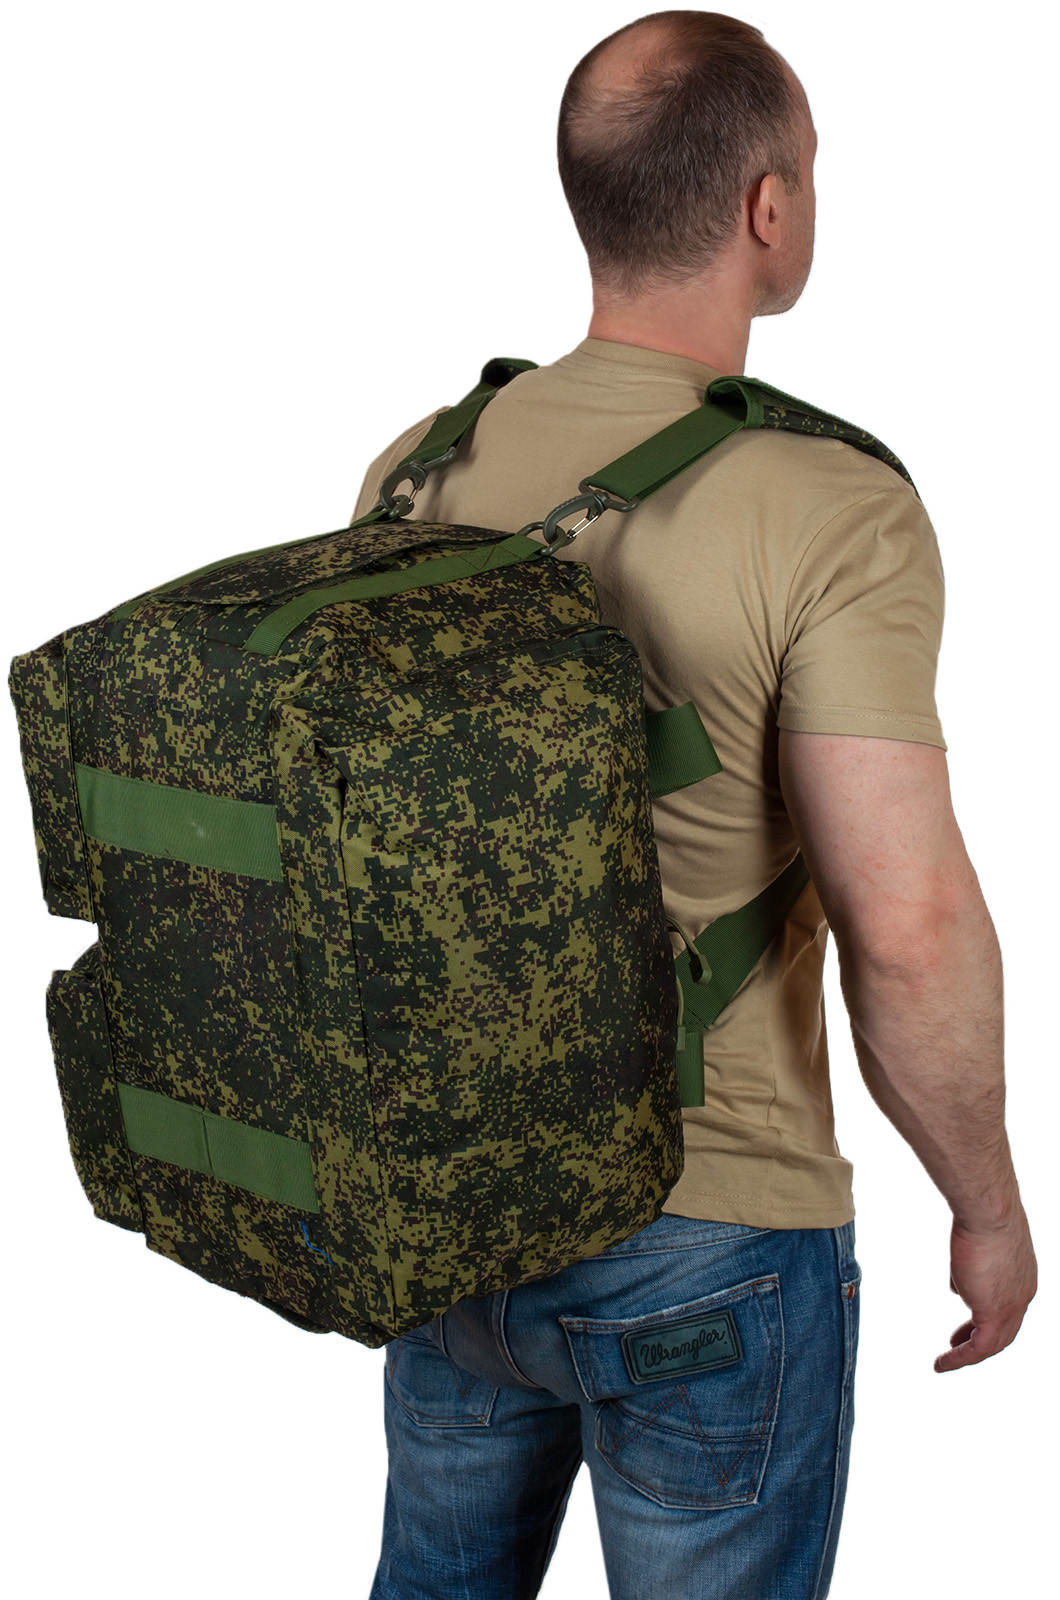 Купить практичную тактическую сумку с нашивкой Погранвойск оптом или в розницу